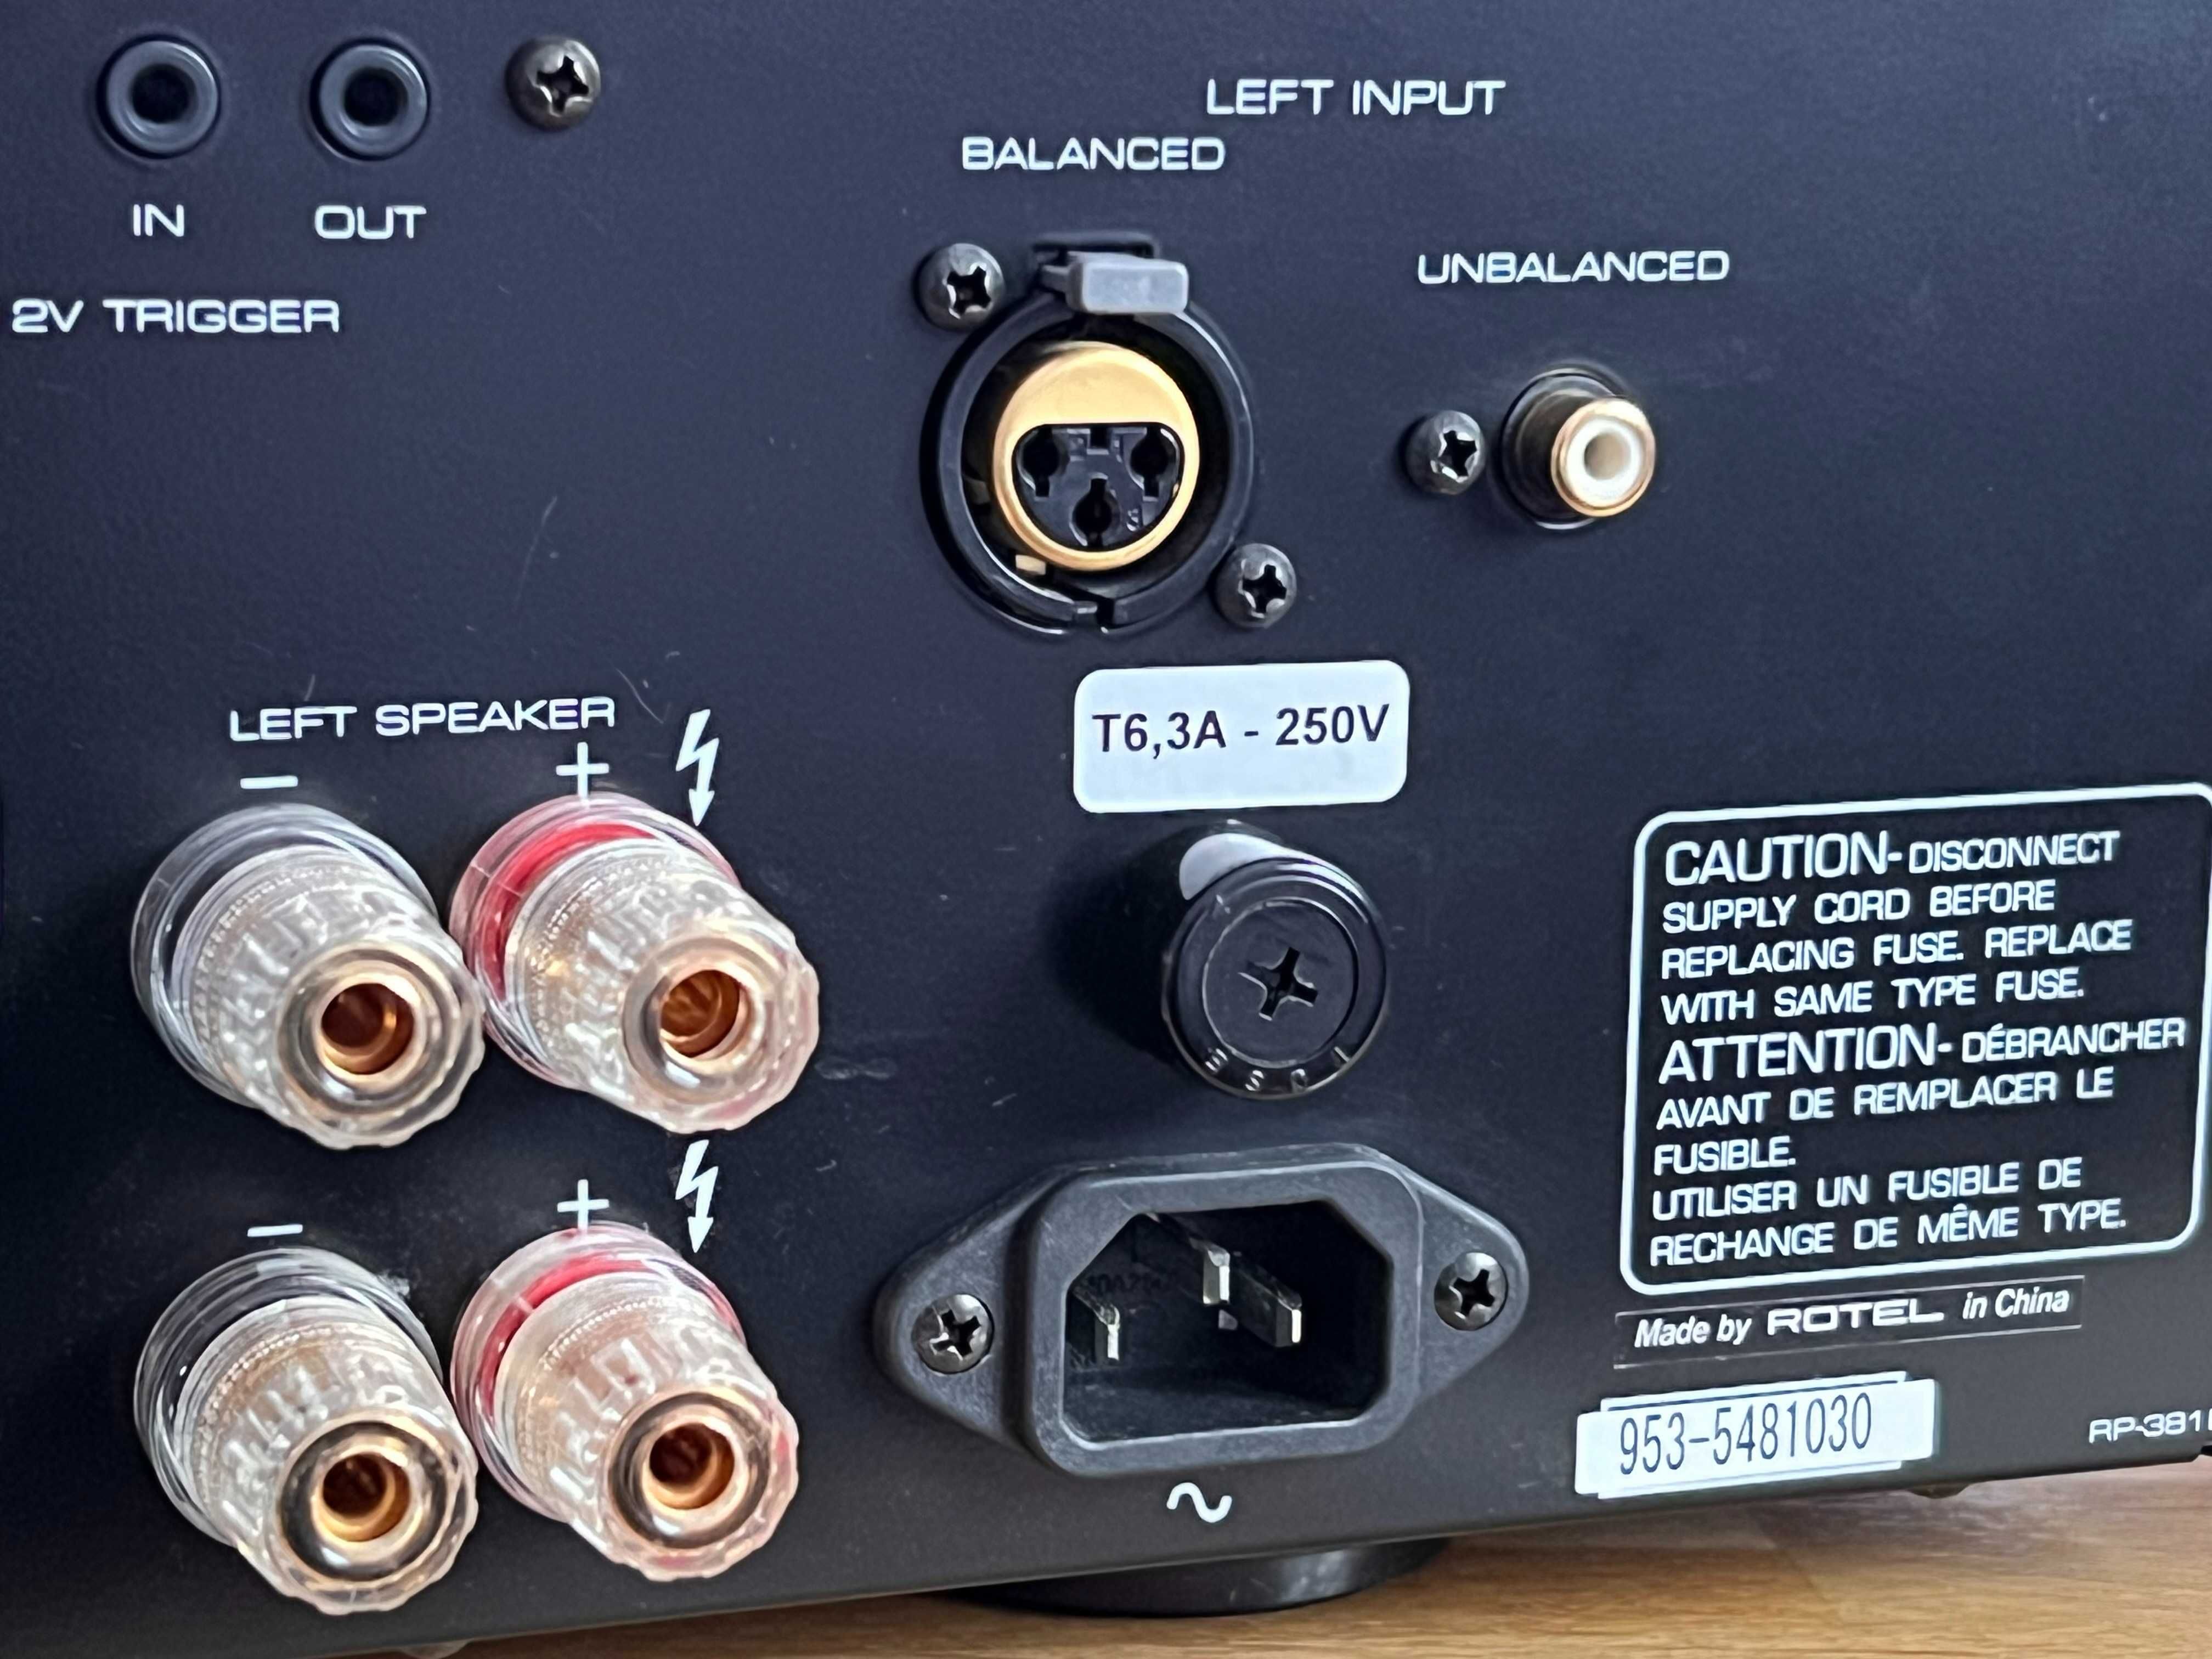 Rotel RB 1080 RC 1070 wzmacniacz pre power amp pilot karton instrukcja